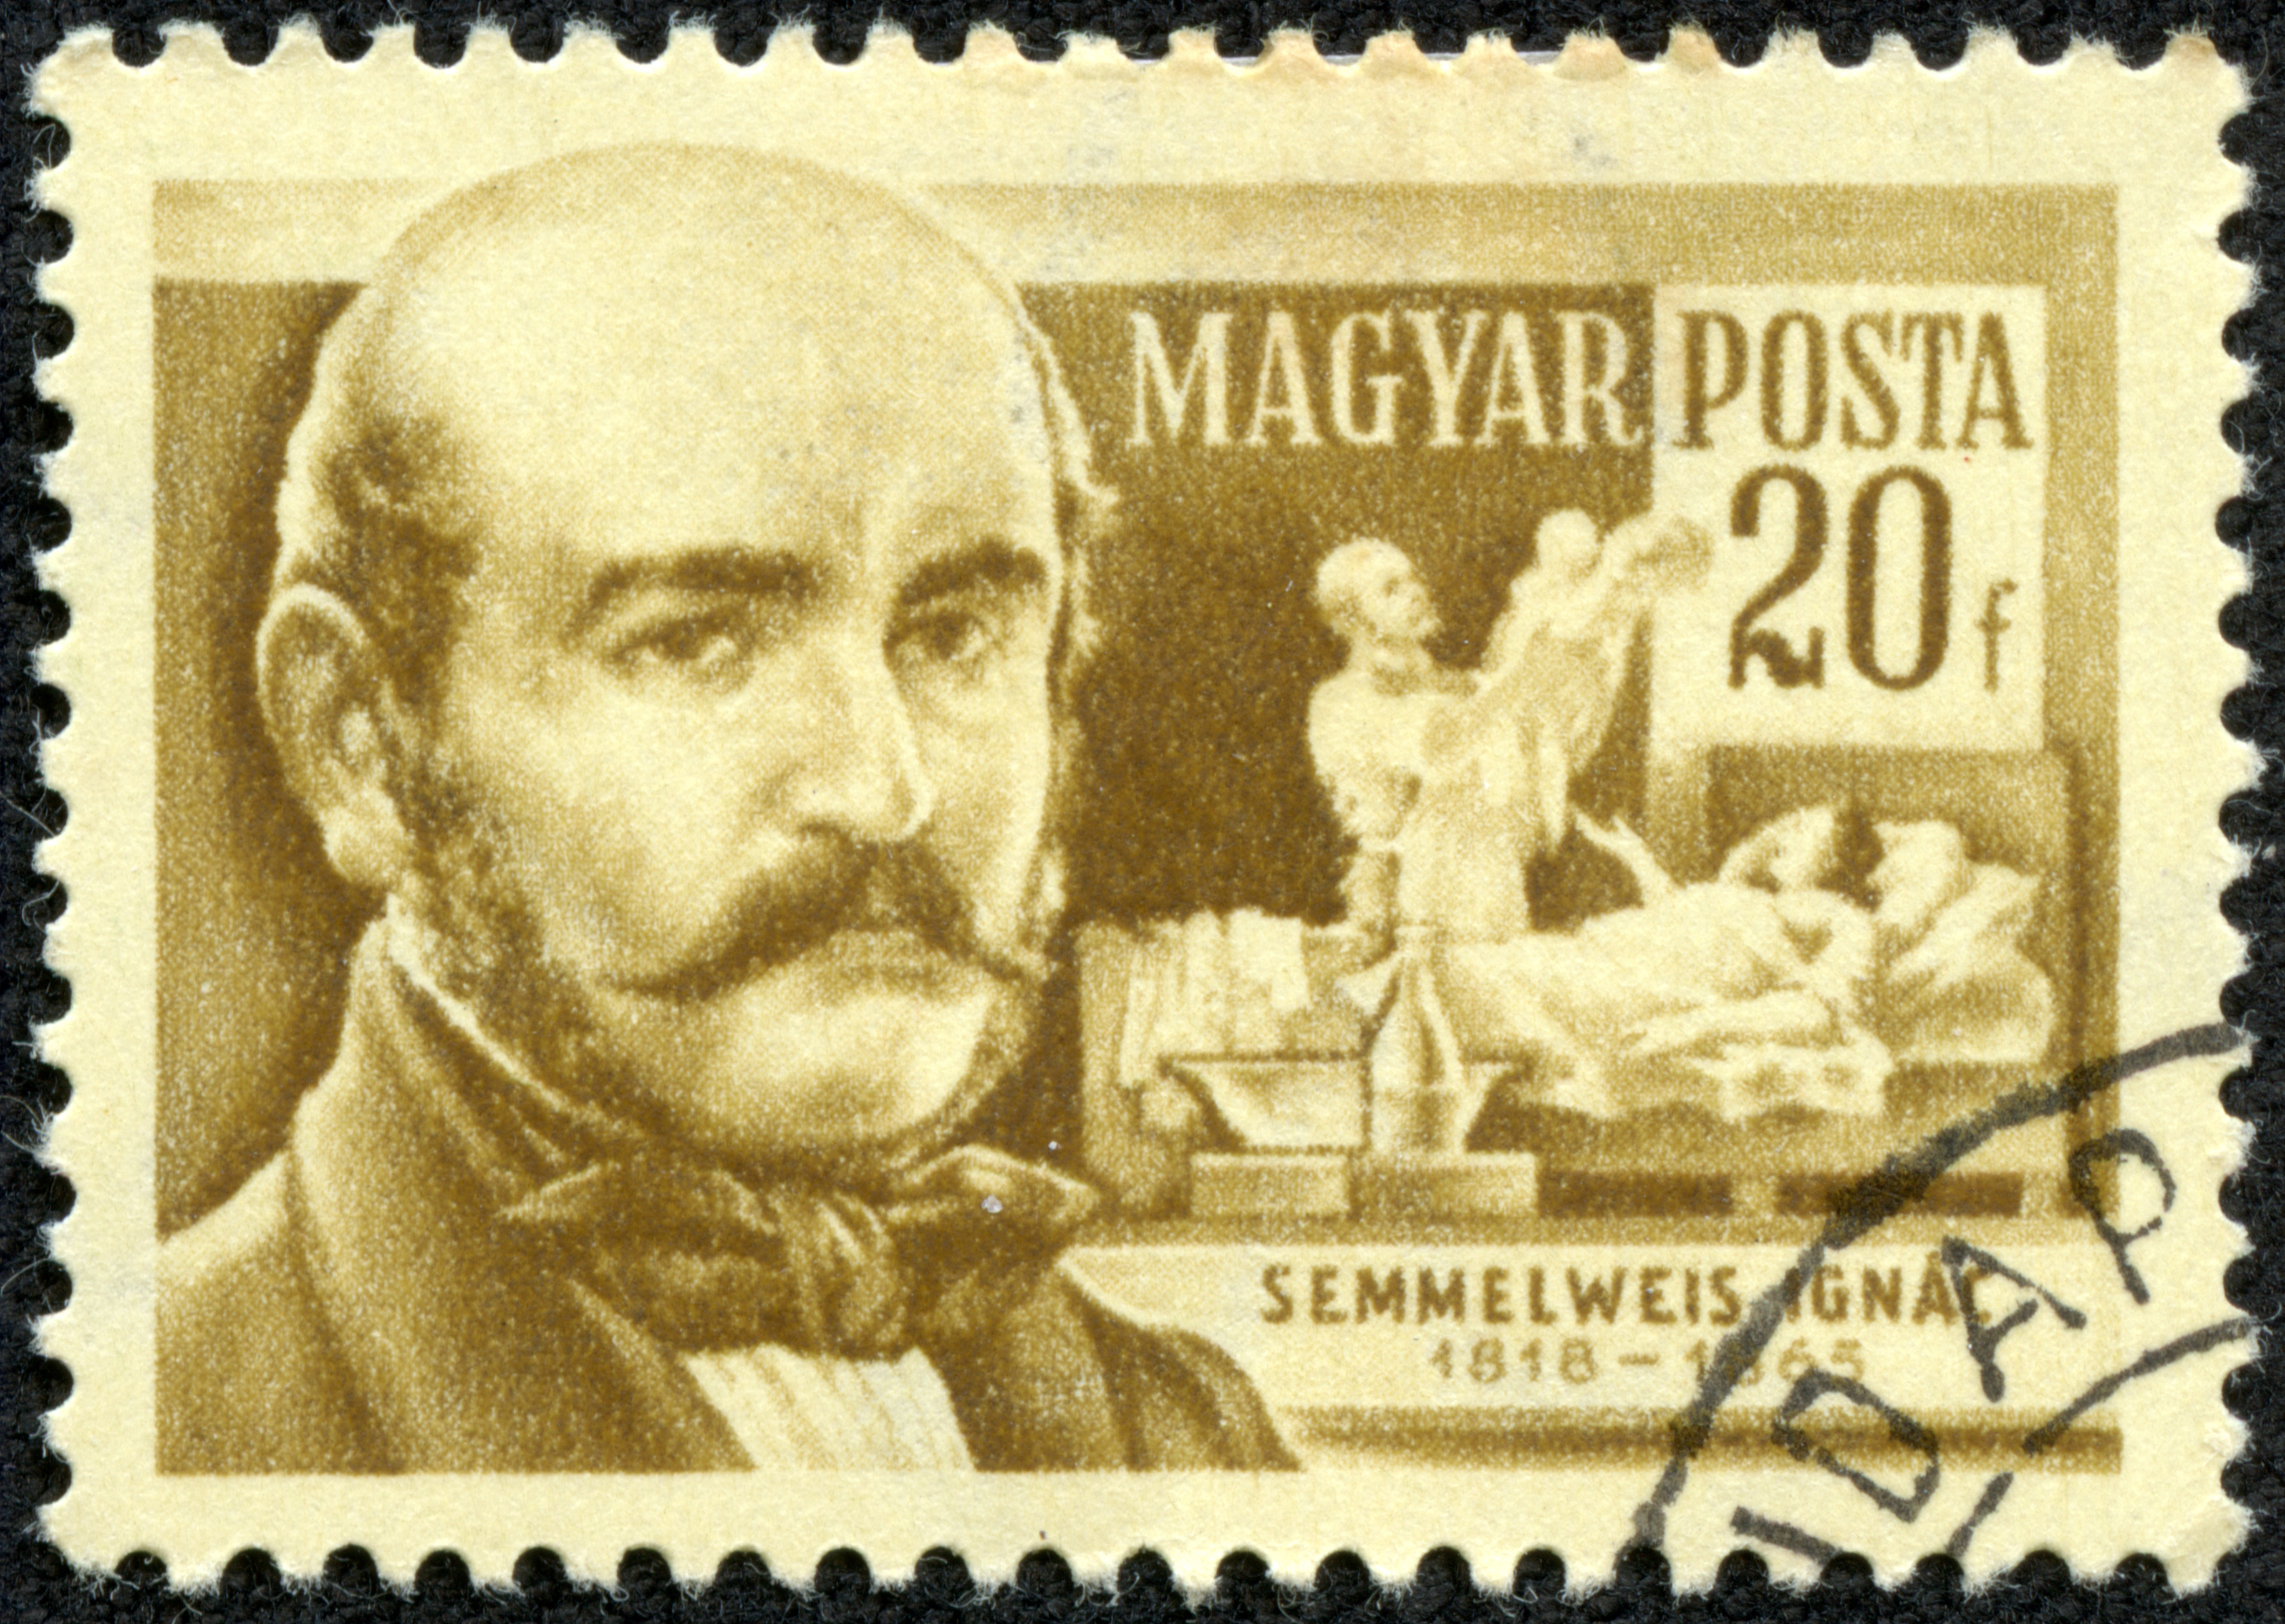 Ignaz Semmelweis – An Unappreciated Visionary